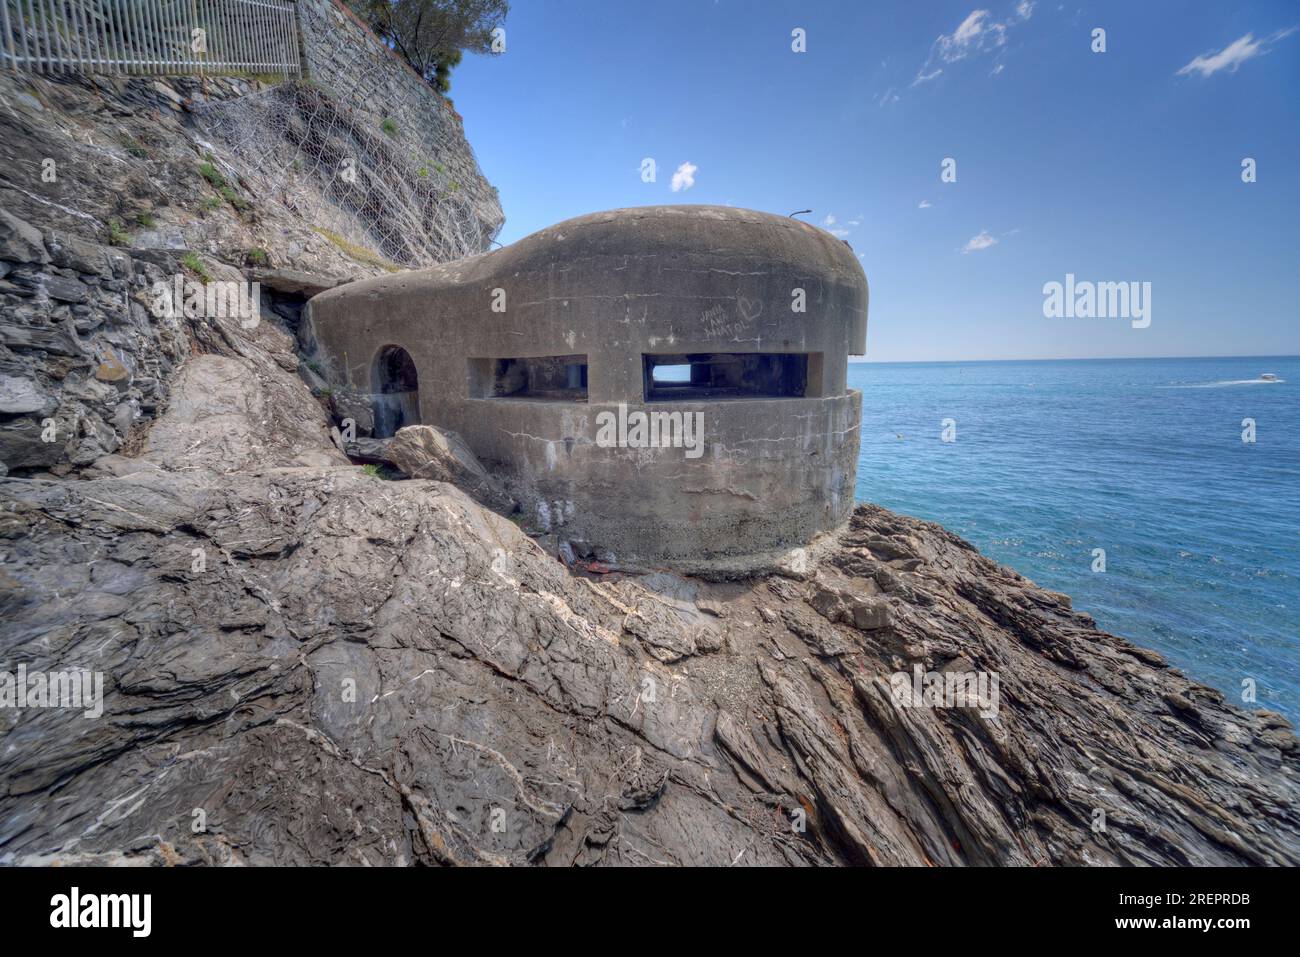 Monterosso al Mare, Liguria, Italy - 05/20/2016 - German WW2 (II World War) bunker or pill box in Cinque Terre at the town of Monterosso al Mare. Stock Photo